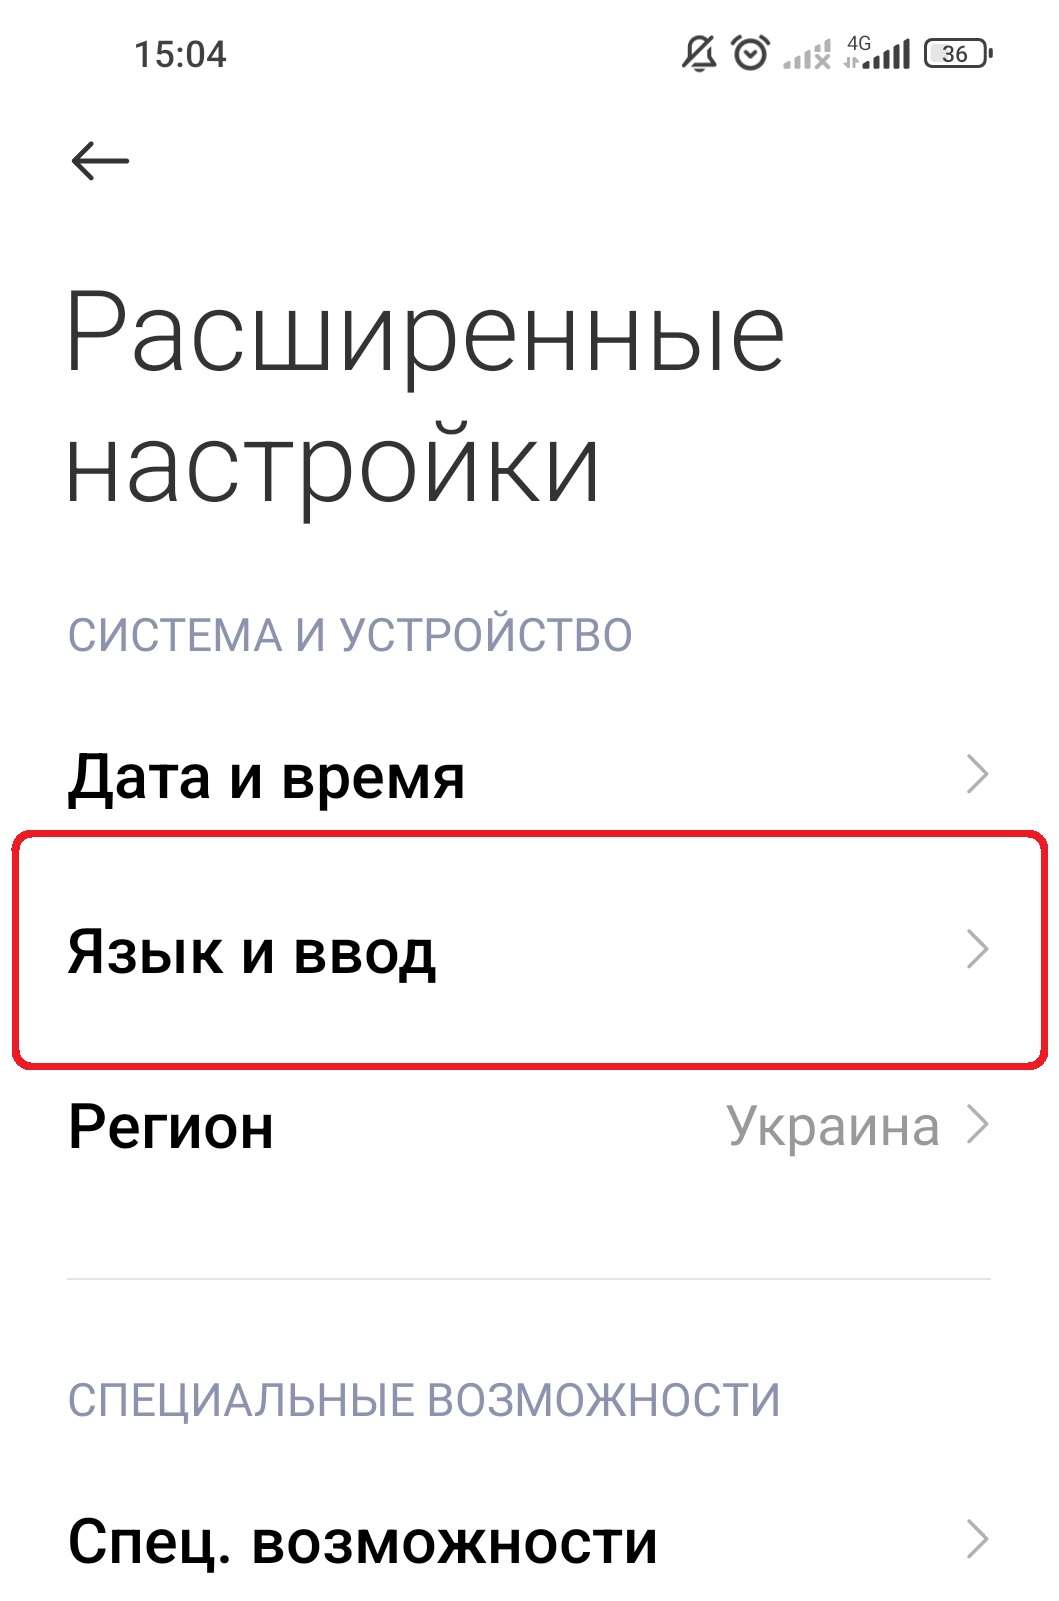 Фото як перевести телефон на українську мову - виберіть "Мова та введення"